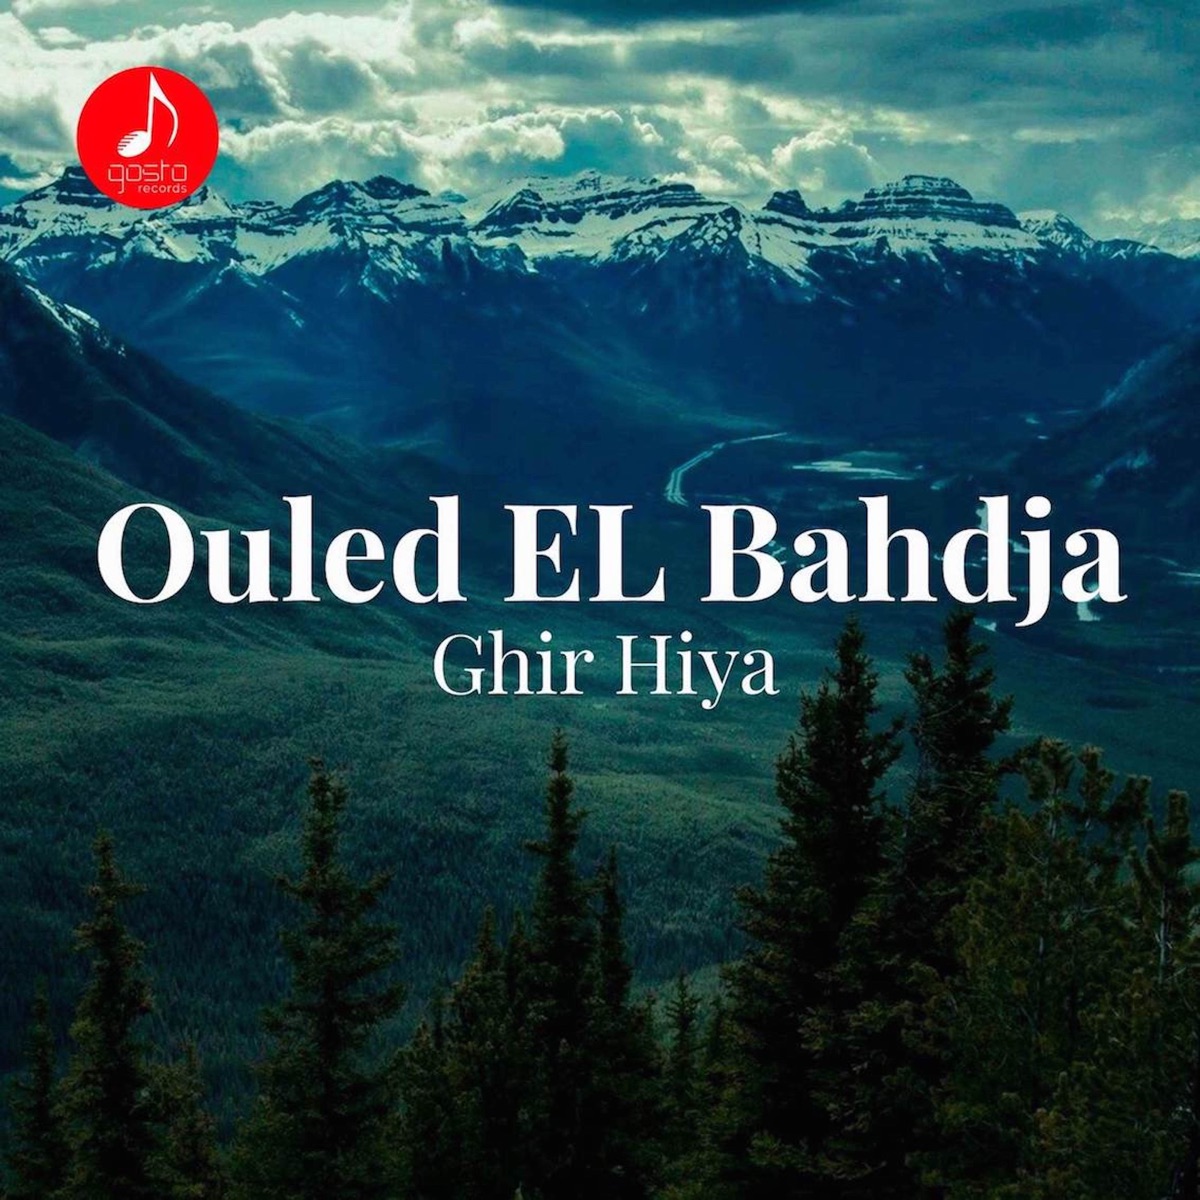 3am Jdid - Single par Ouled El Bahdja sur Apple Music